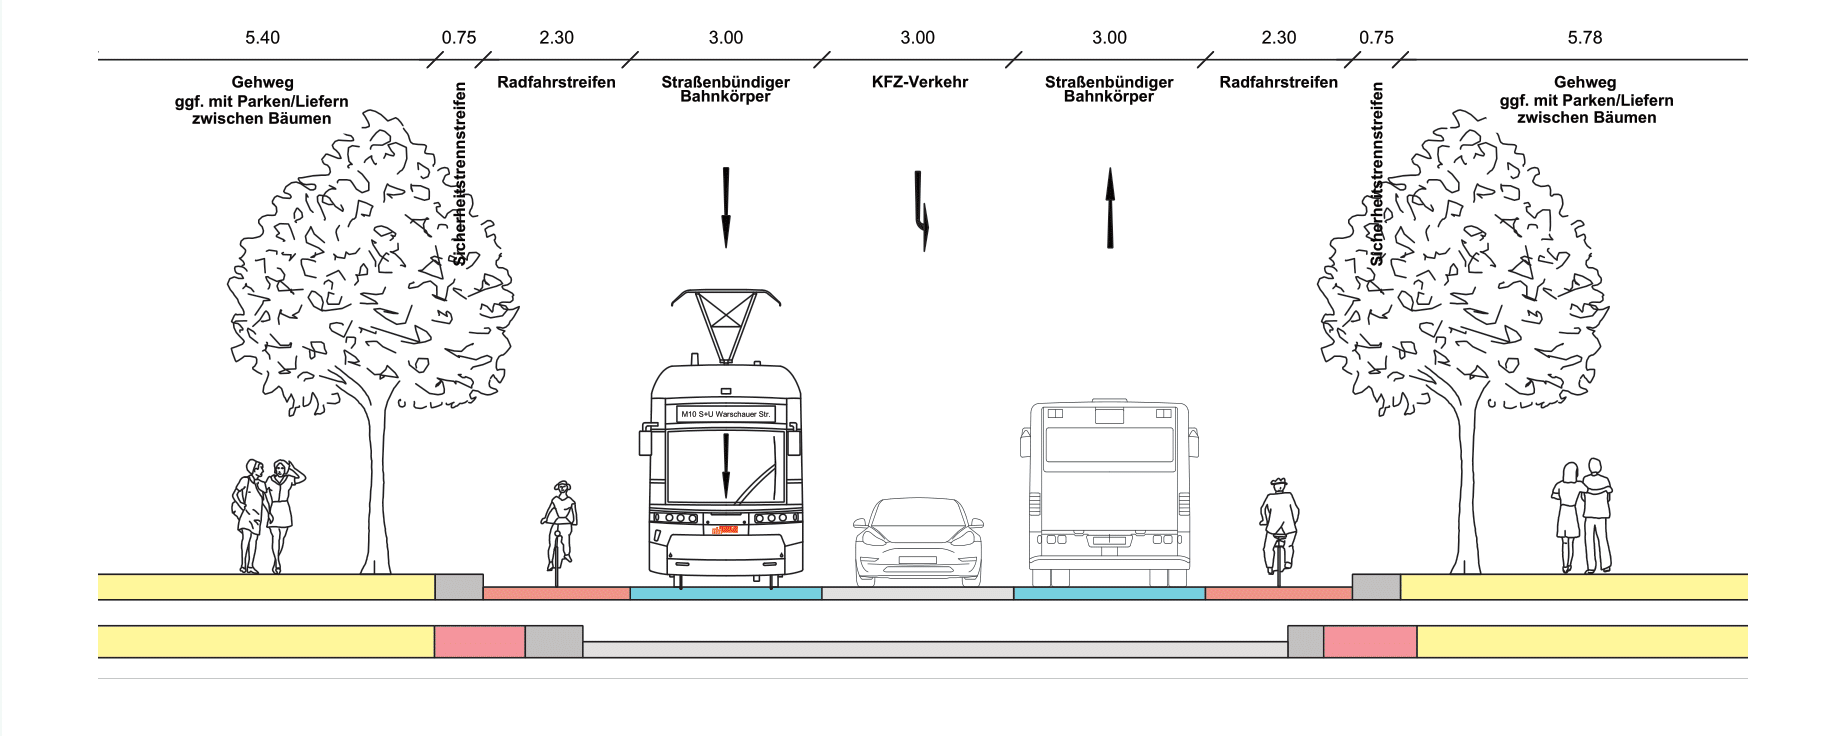 Diese Abbildung zeigt eine technische Zeichnung des Querschnitt er Alternative straßenbündiger Bahnkörper